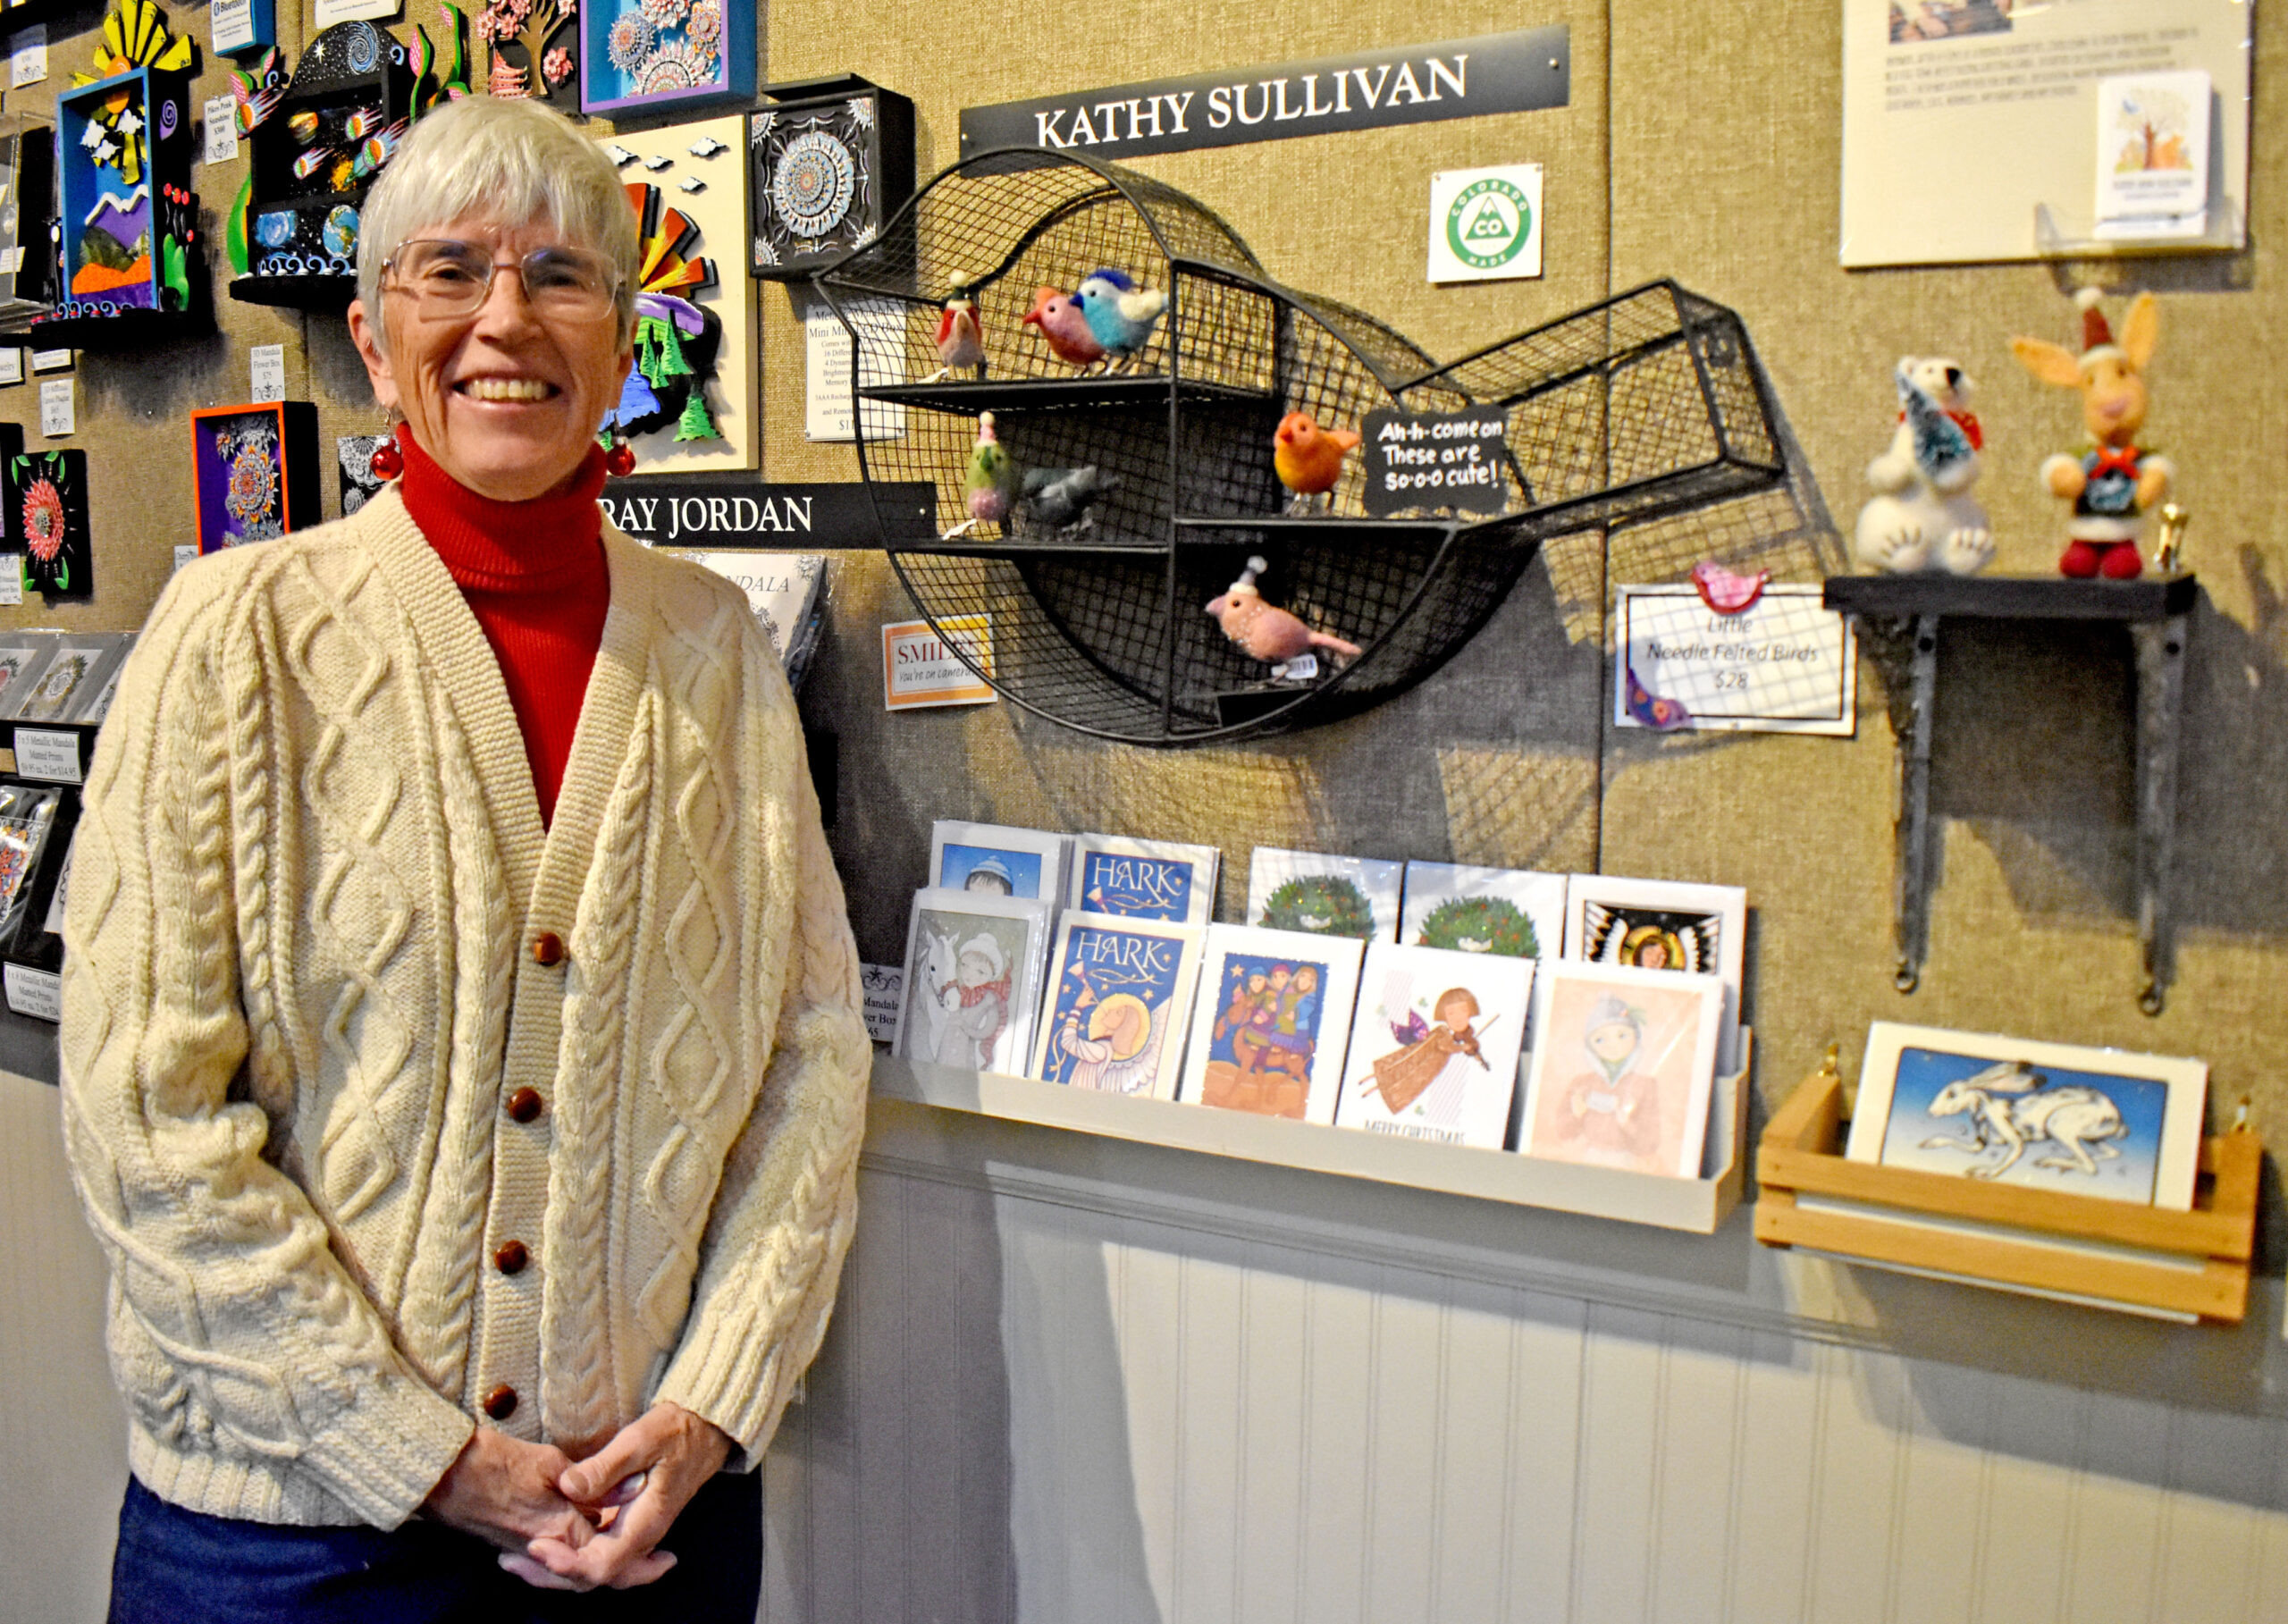 Photo by Rhonda Van Pelt. Kathy Sullivan stands next to her display at Commonwheel Artists Co-op.